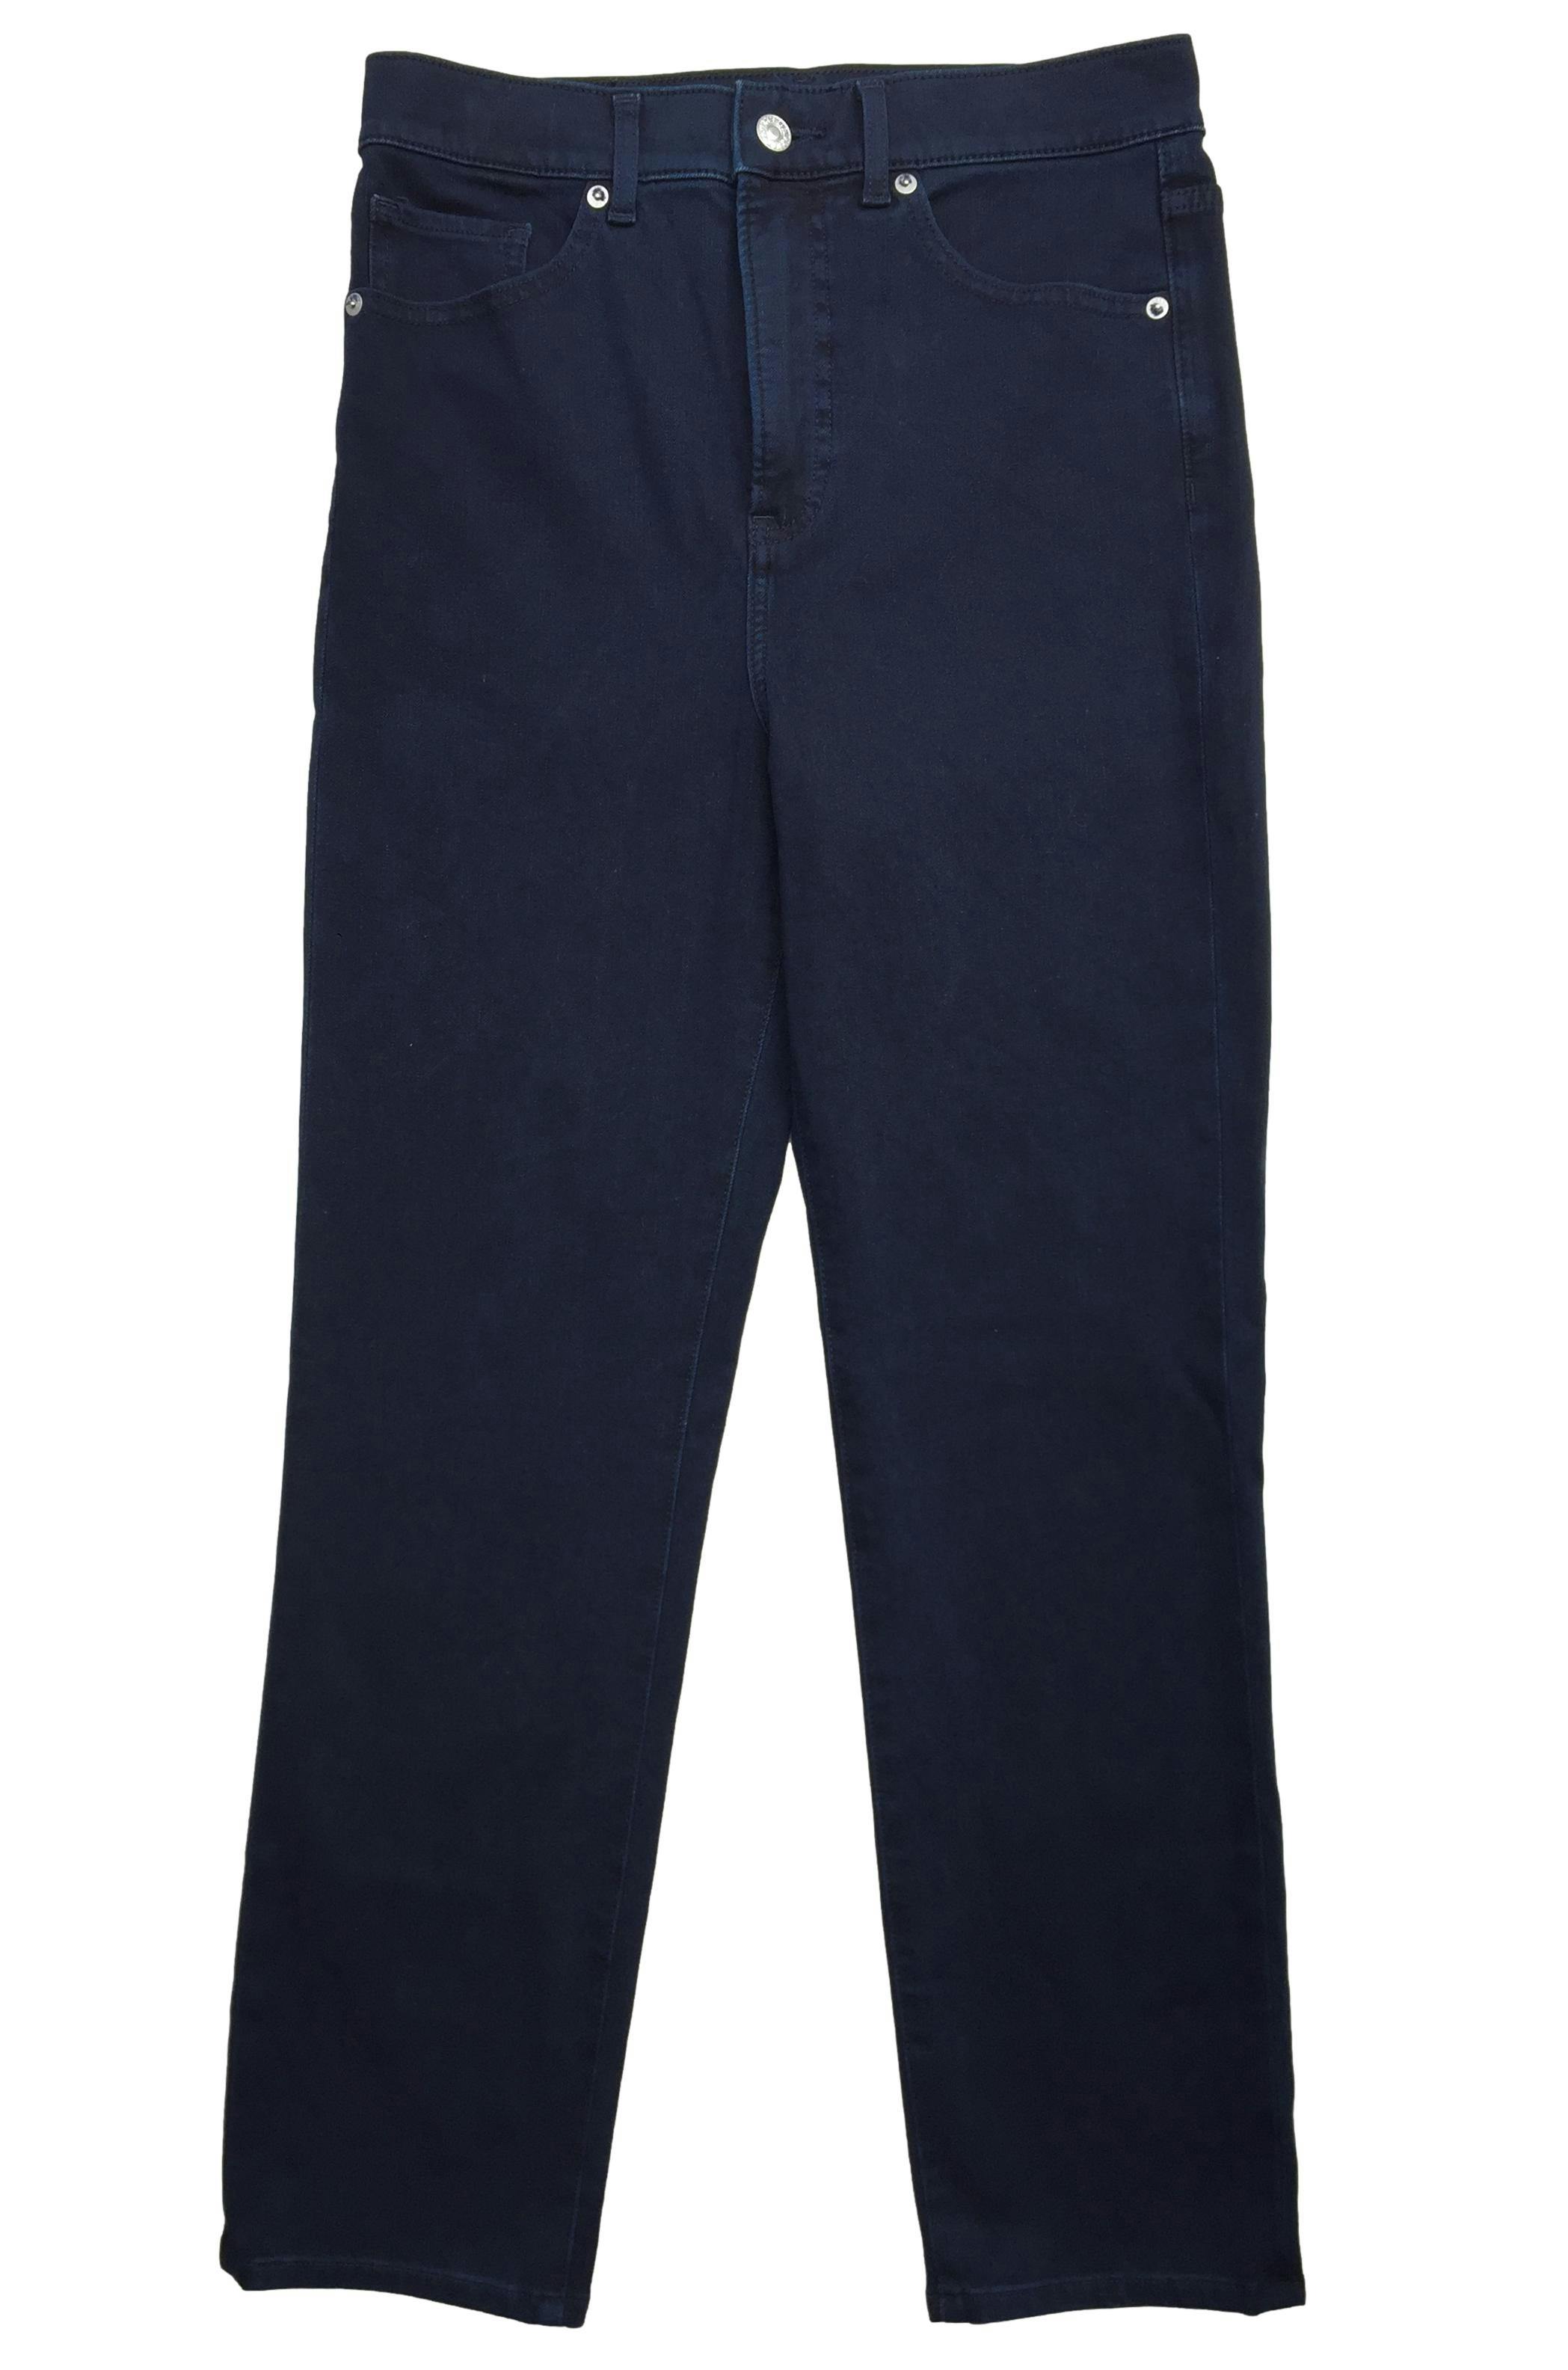 Pantalón jean Express azulino slim, botón y cierre. Cintura: 72cm, Tiro: 31cm, Largo: 98cm